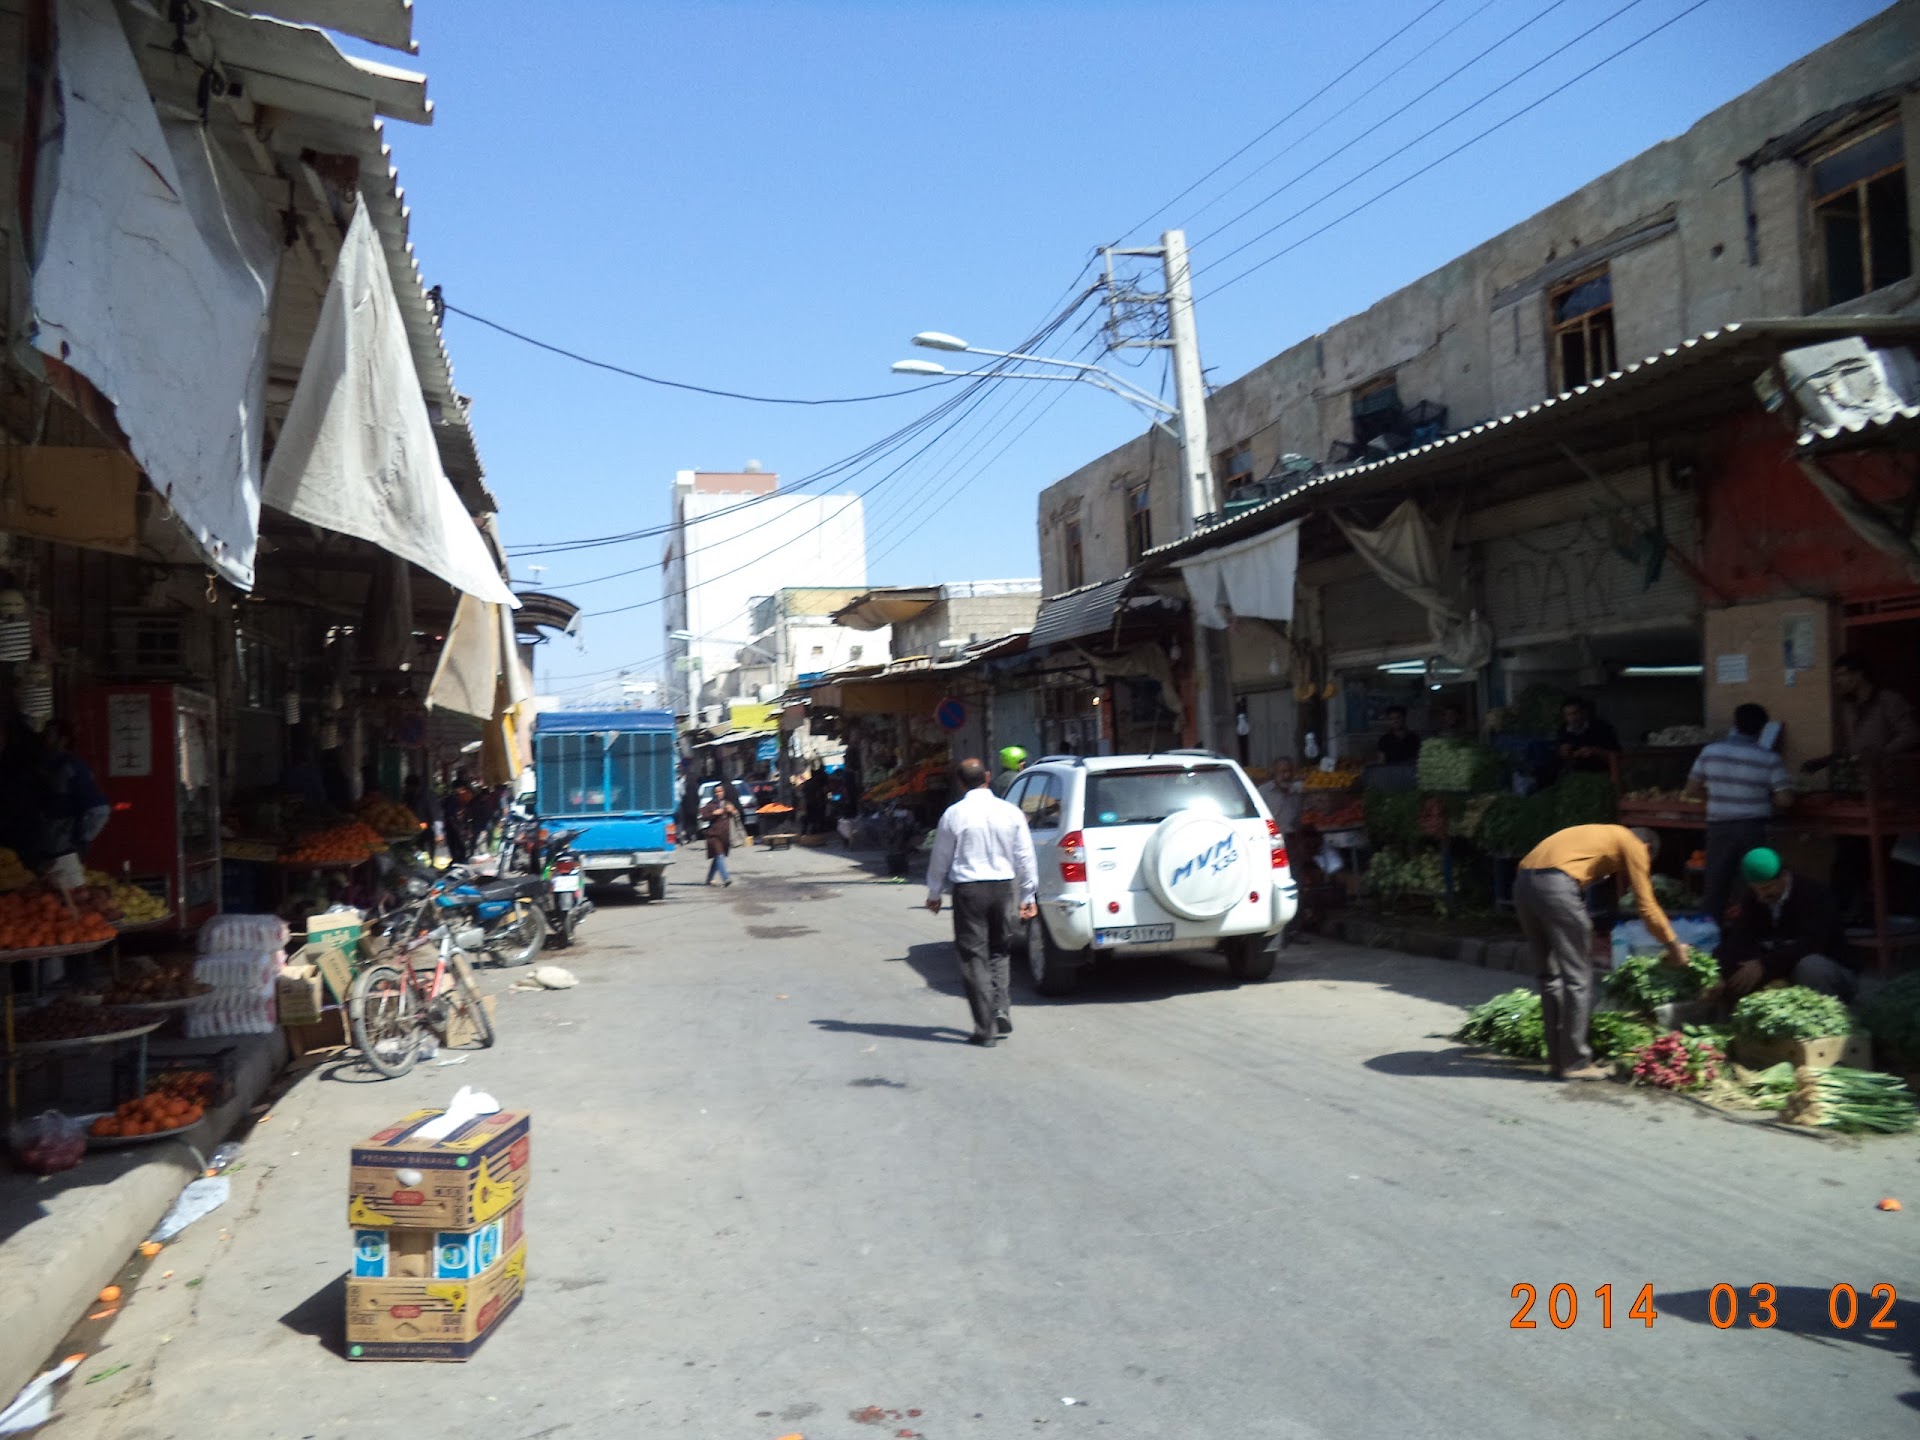 بازار بوشهر, Bushehr Bazaar